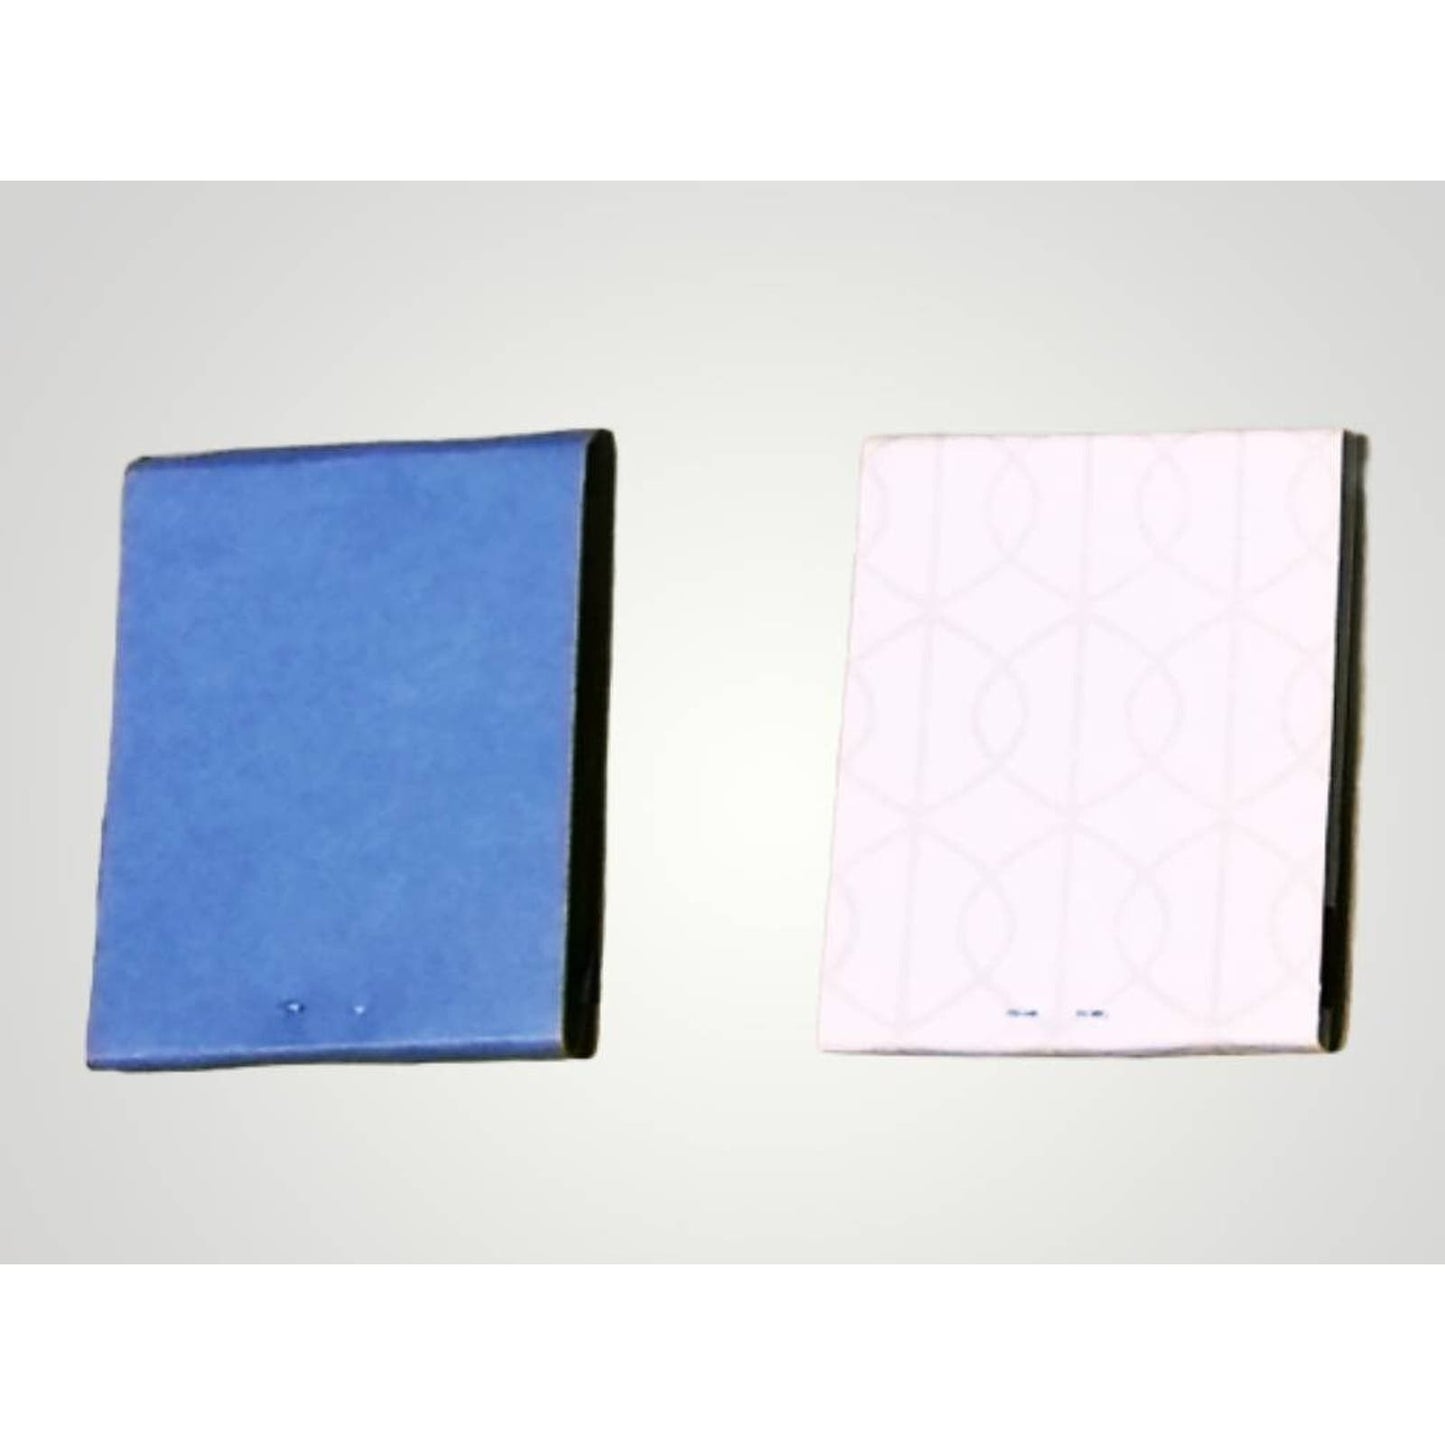 9 Miniature Notebooks, Matchbook Notepads